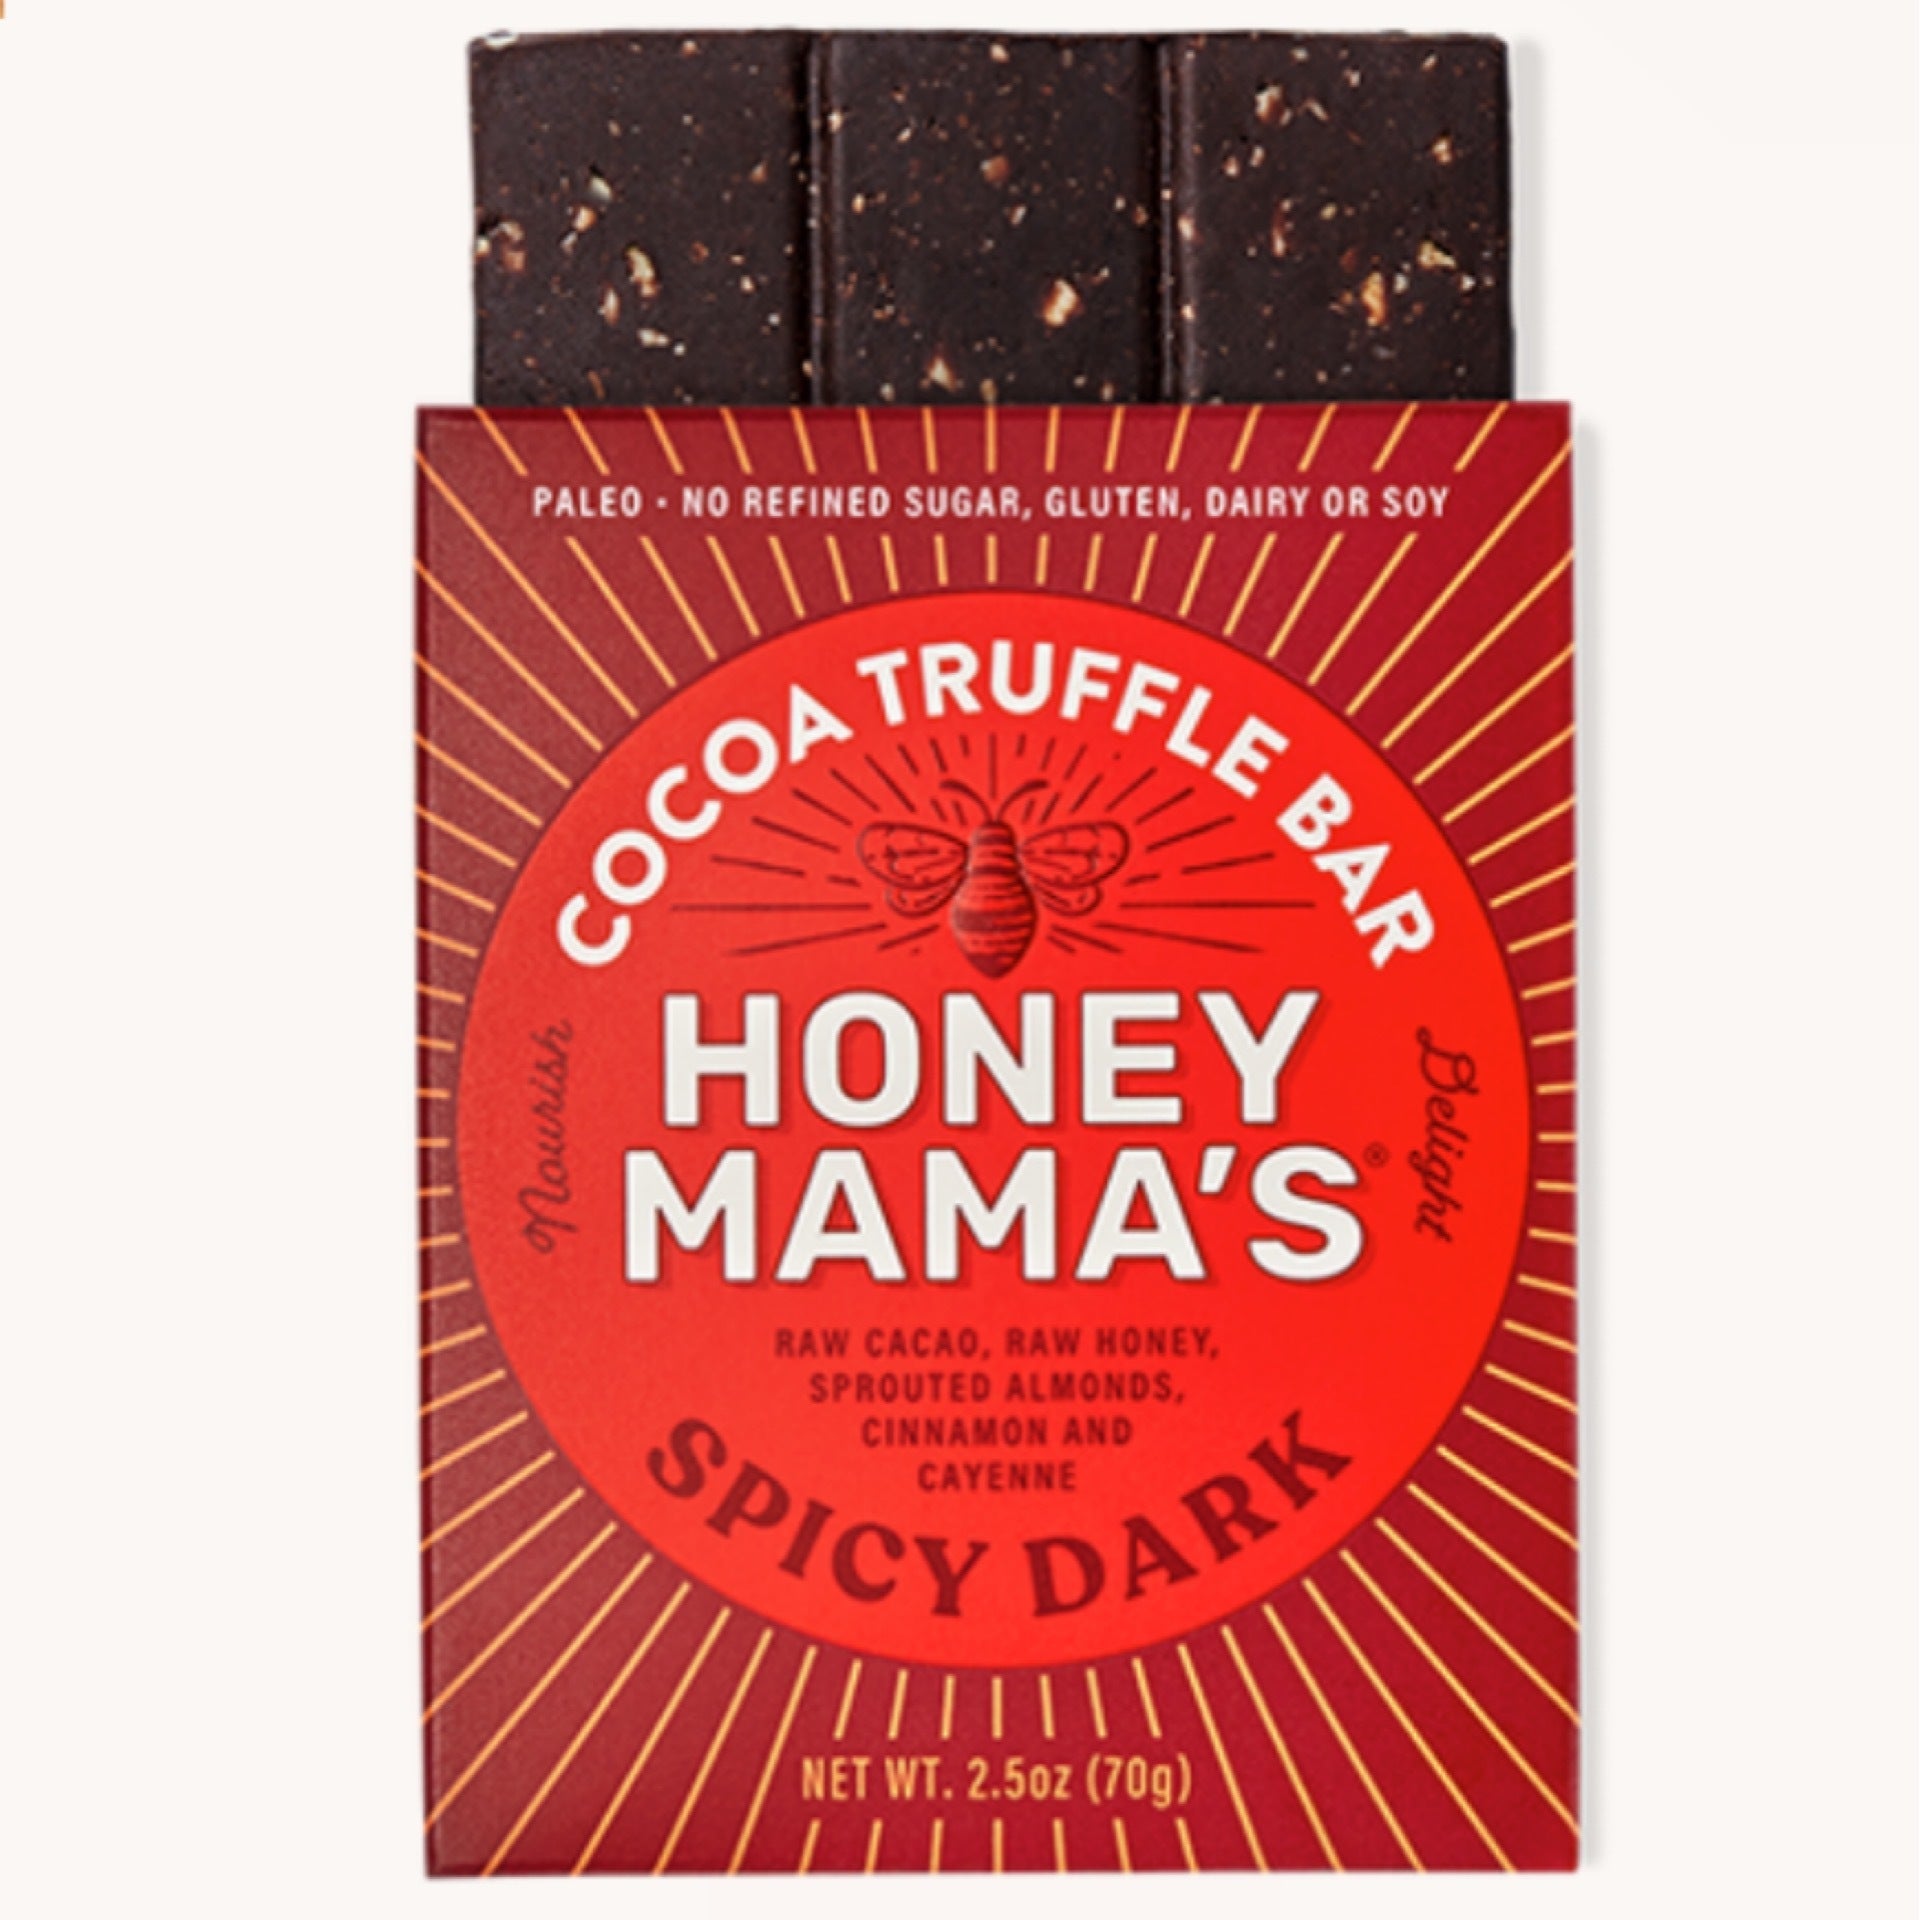 Honey Mama's Original Dutch Cocoa Truffle Bar, 2.5 oz